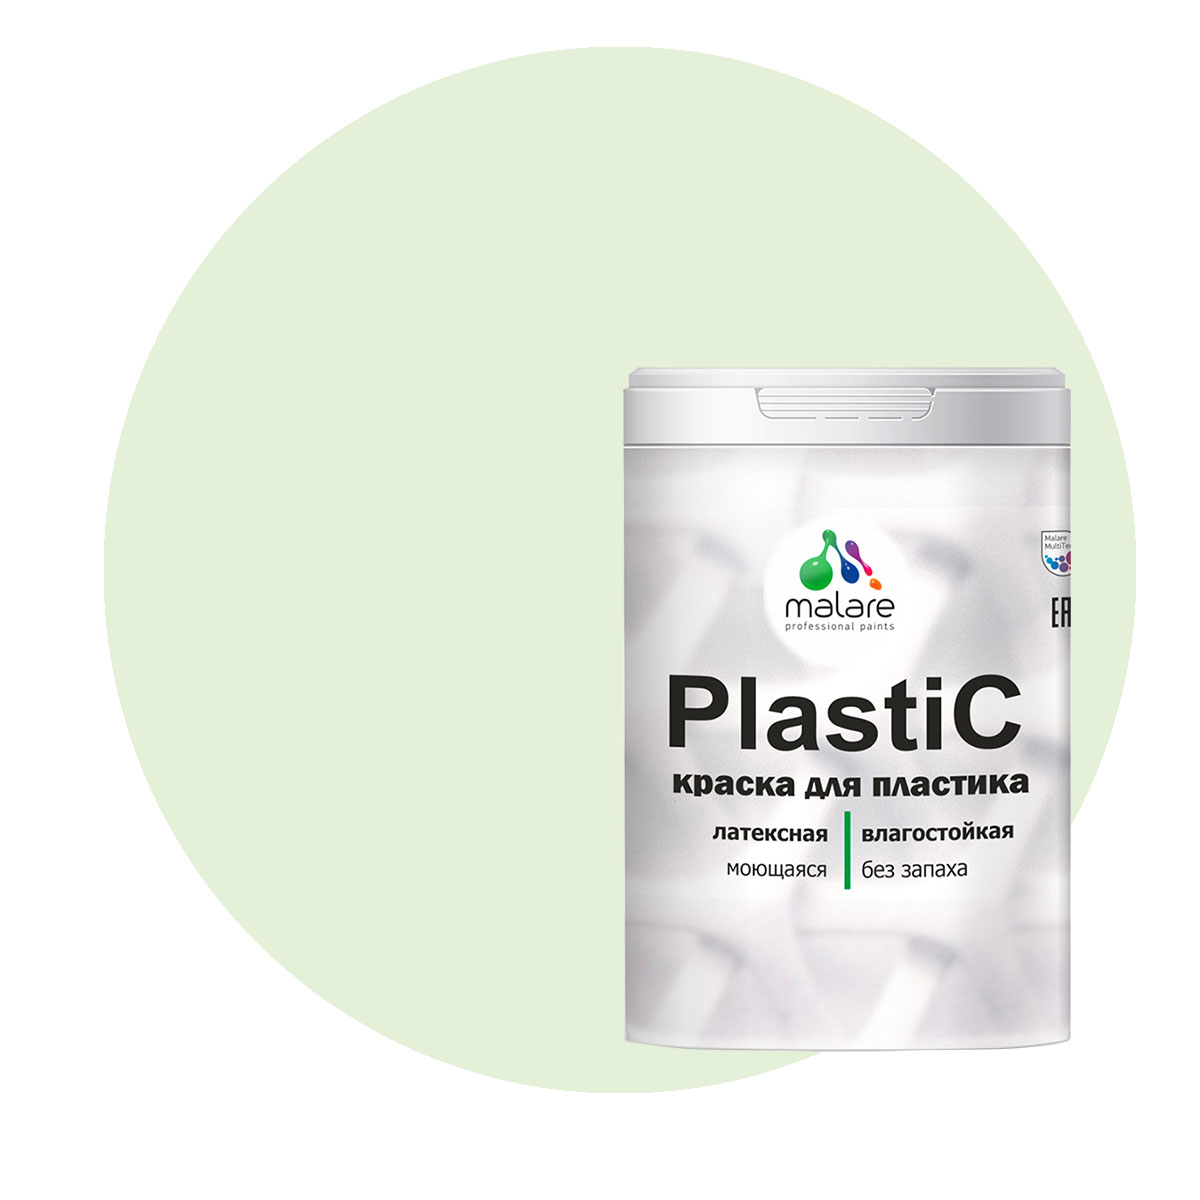 Краска Malare PlastiC для пластика, ПВХ, для сайдинга, светло-зеленый 1 кг. краска malare plastic для пластика пвх для сайдинга зеленый мичиган 2 кг